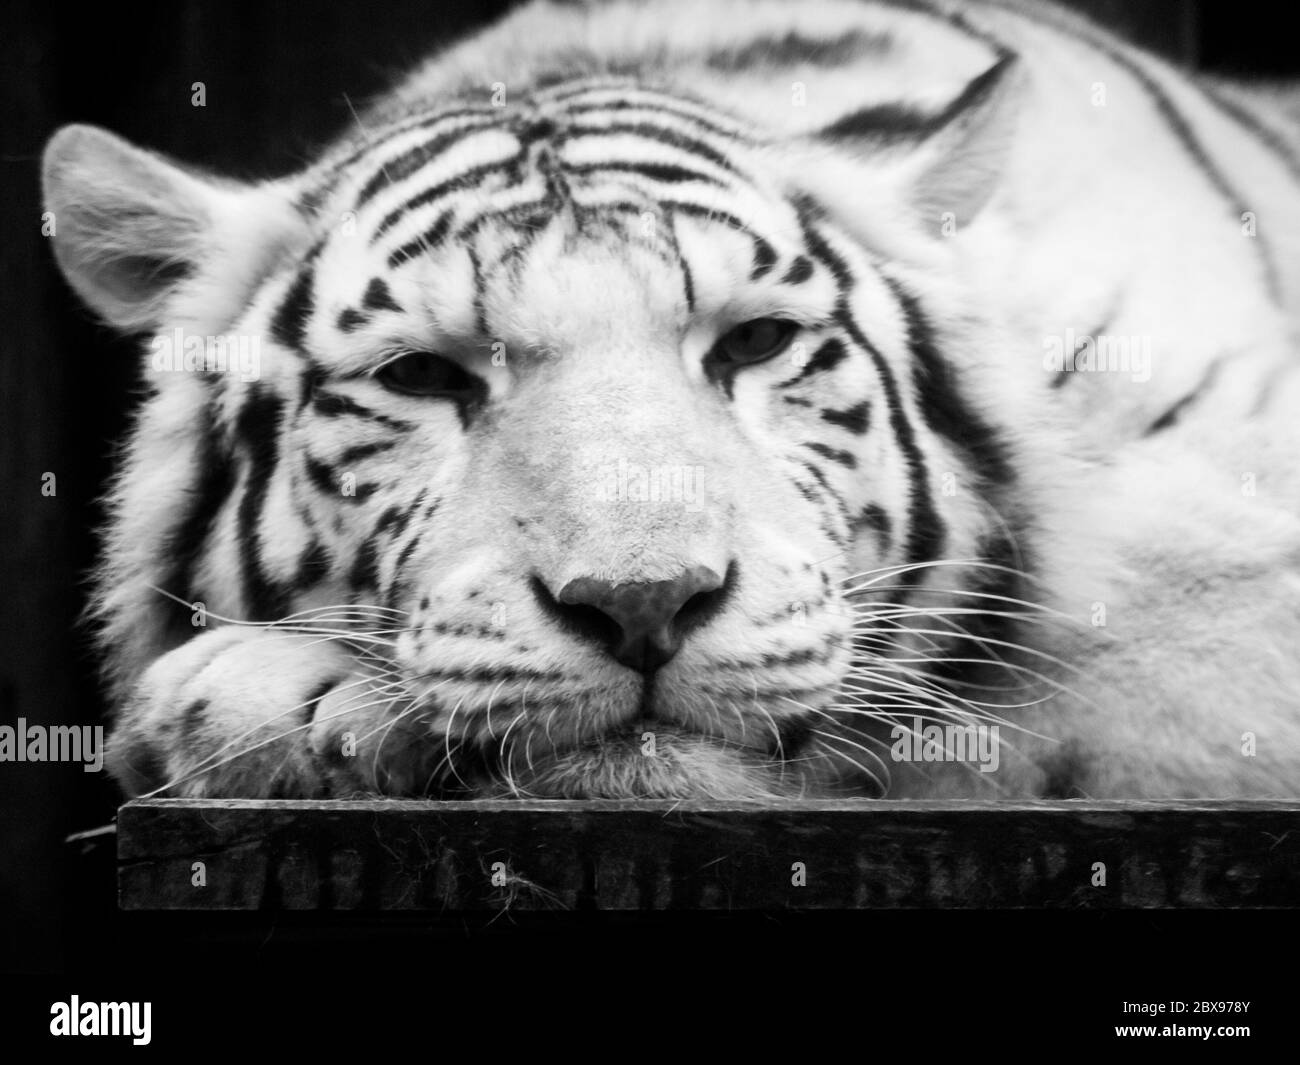 Tigre bianca carina e pigra che si trova sulla scrivania sulla sua zampa. Ritratto di animali selvatici. Immagine in bianco e nero. Foto Stock